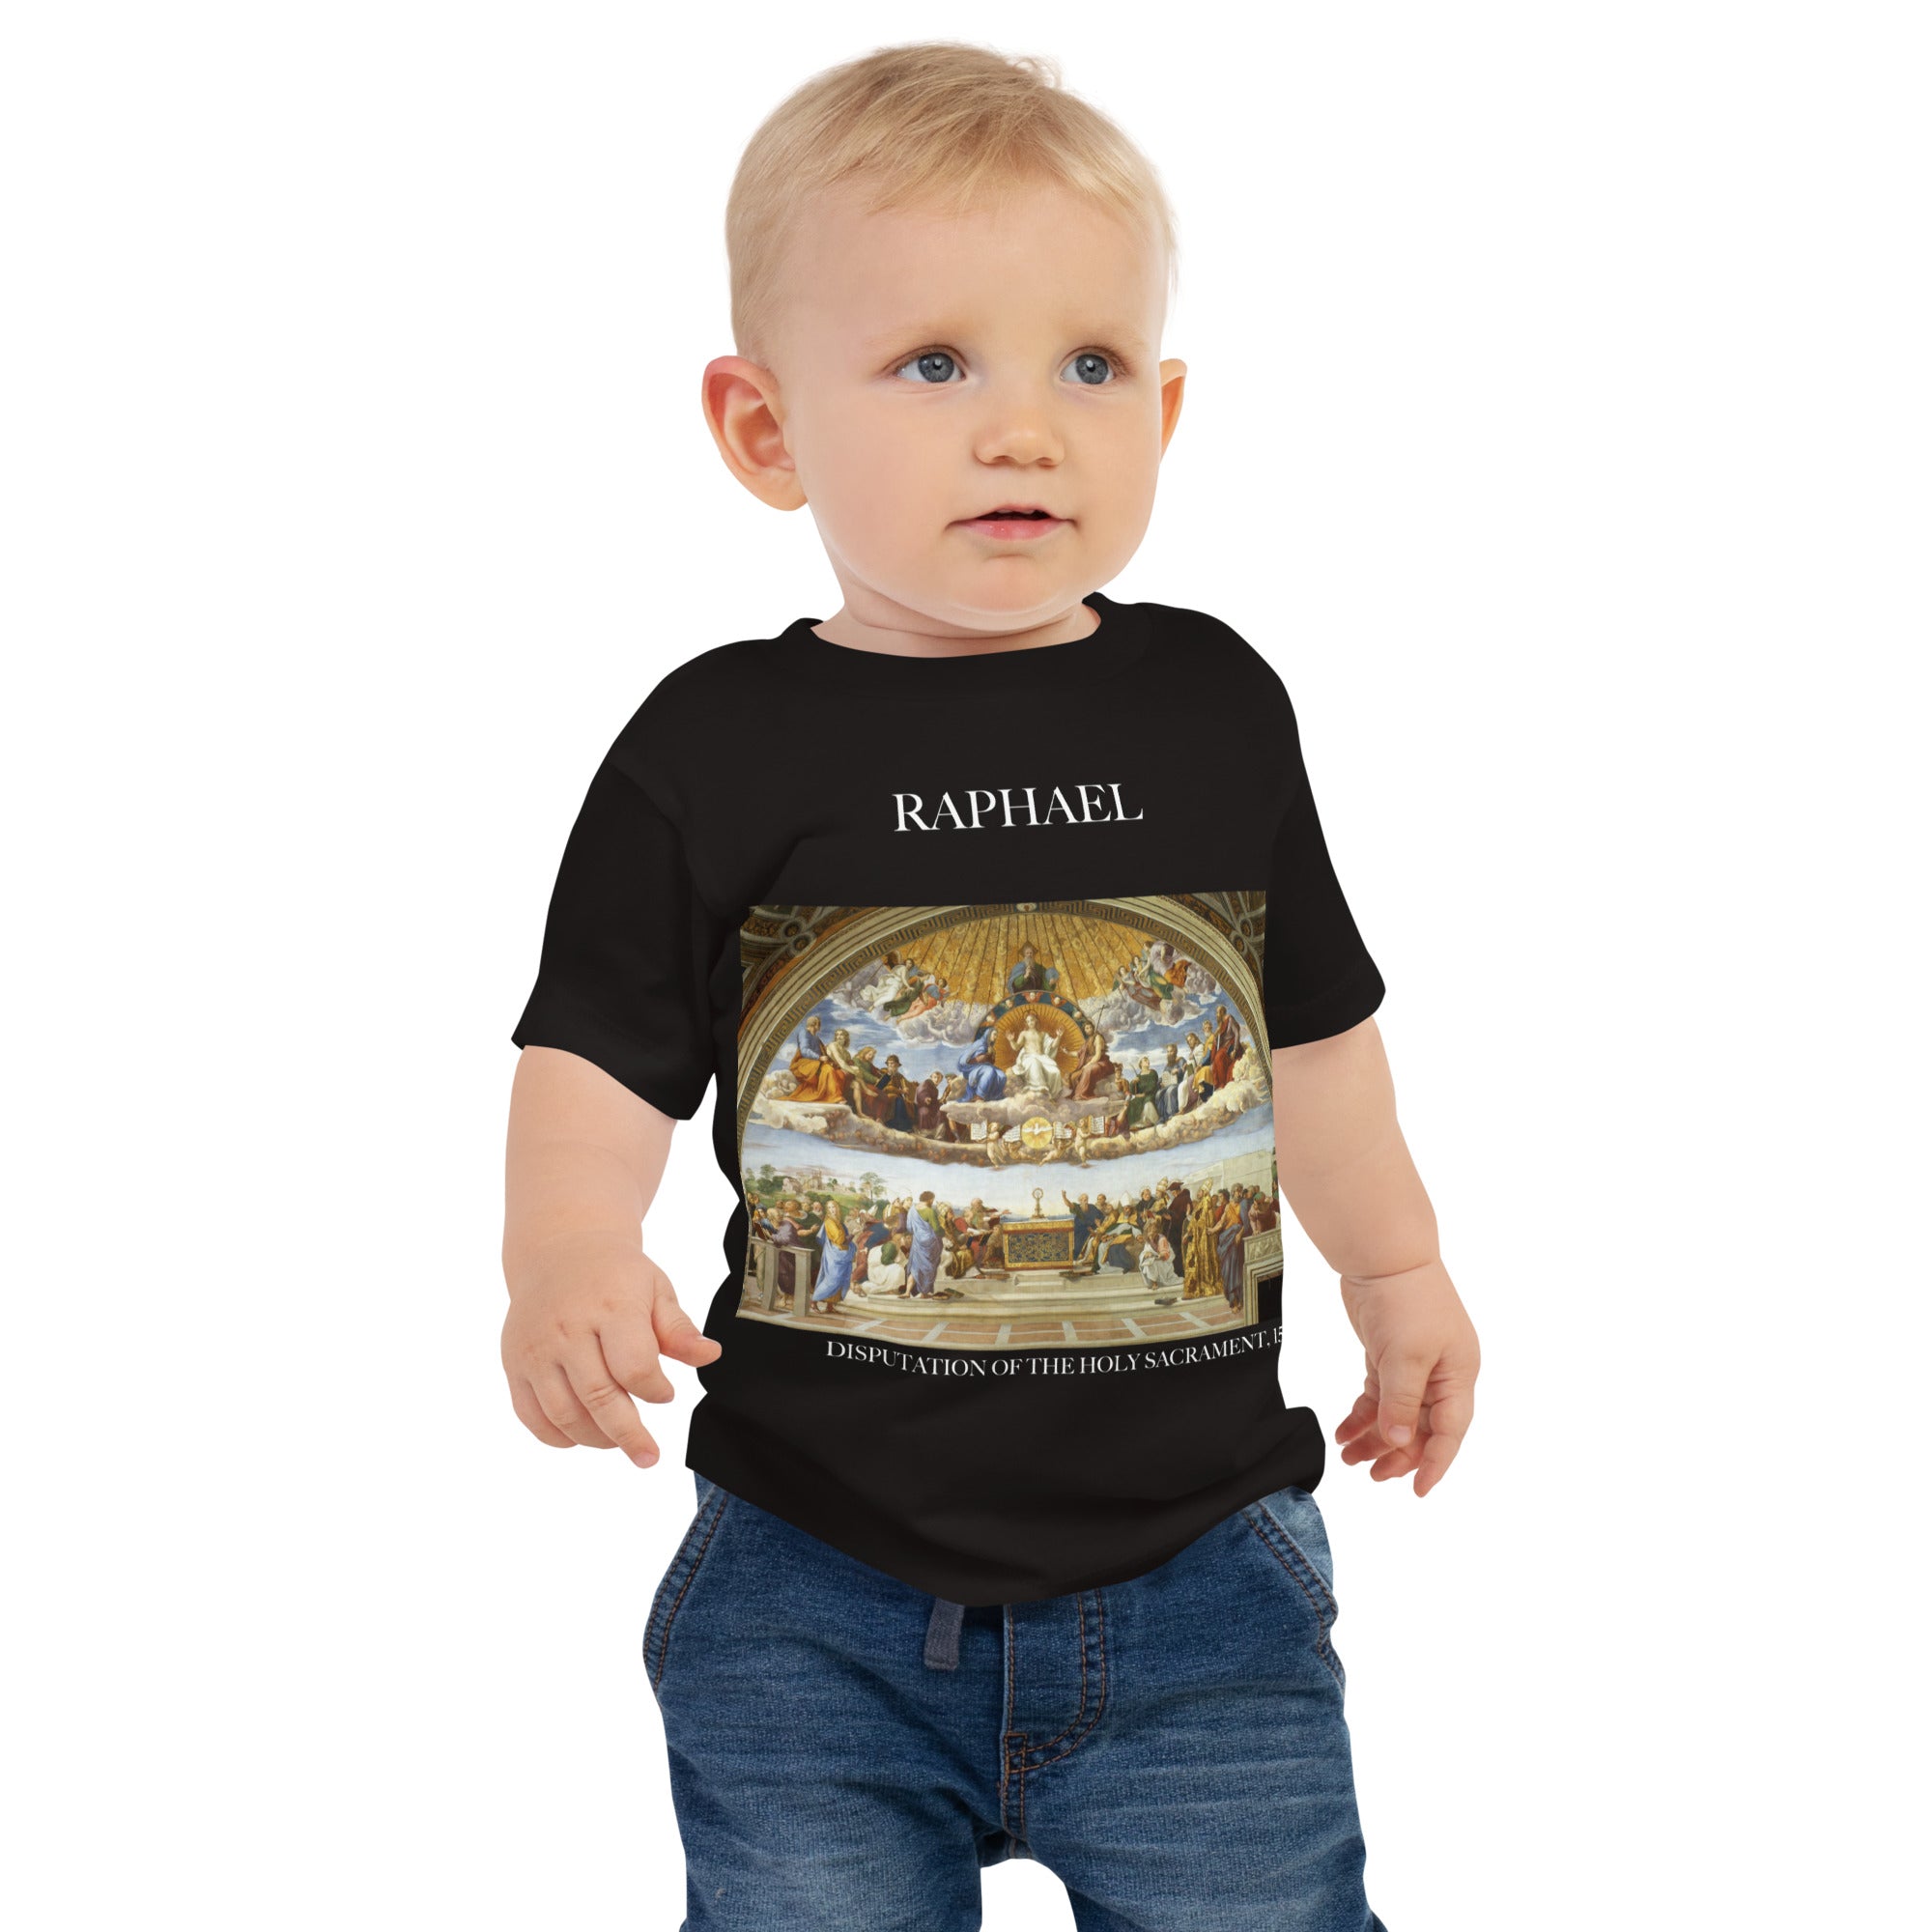 Raphael 'Disputation des Heiligen Abendmahls' Berühmtes Gemälde Baby Staple T-Shirt | Premium Baby Art T-Shirt